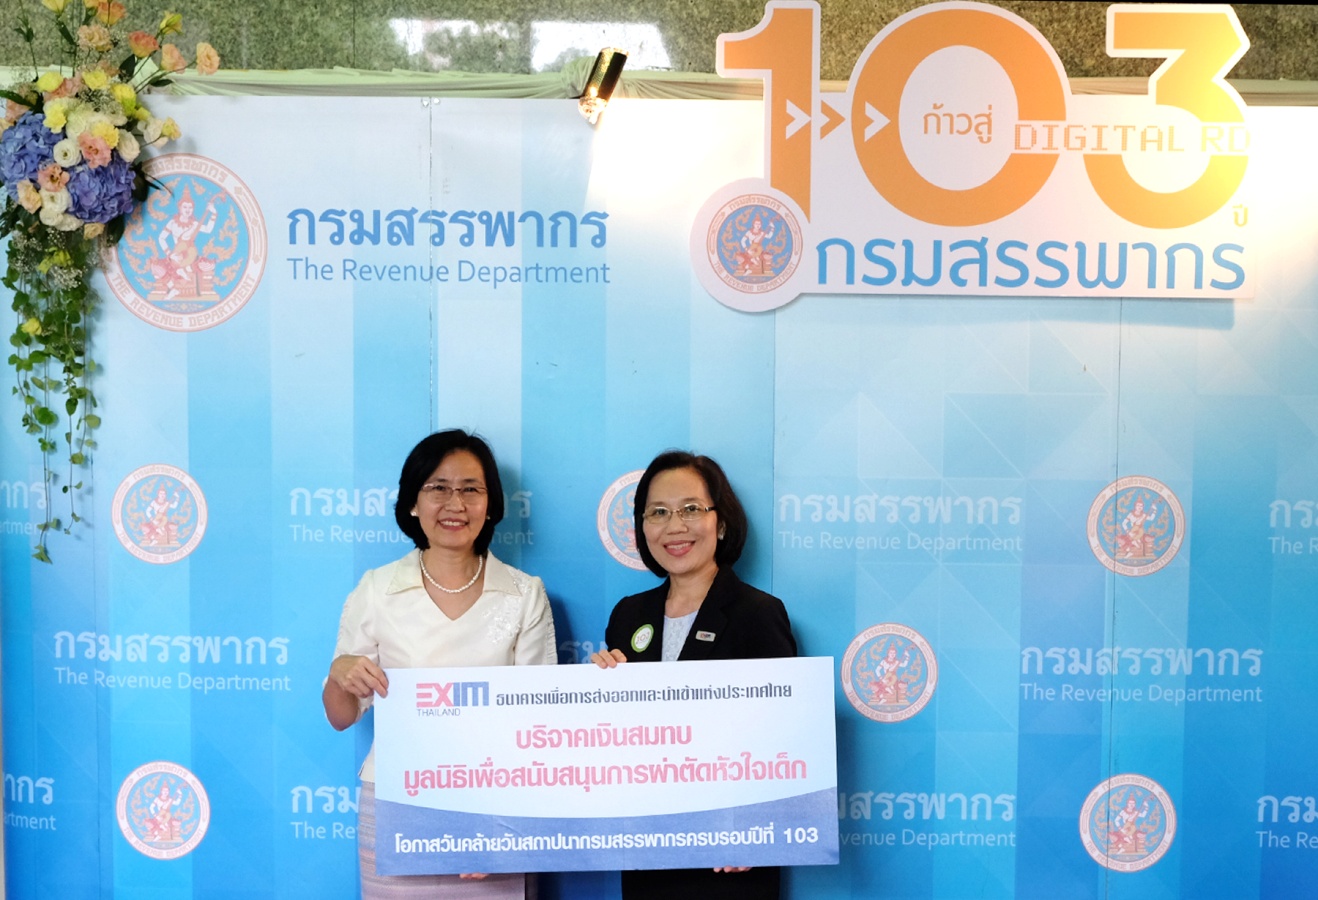 EXIM Thailand Congratulates 103rd Anniversary of Revenue Department